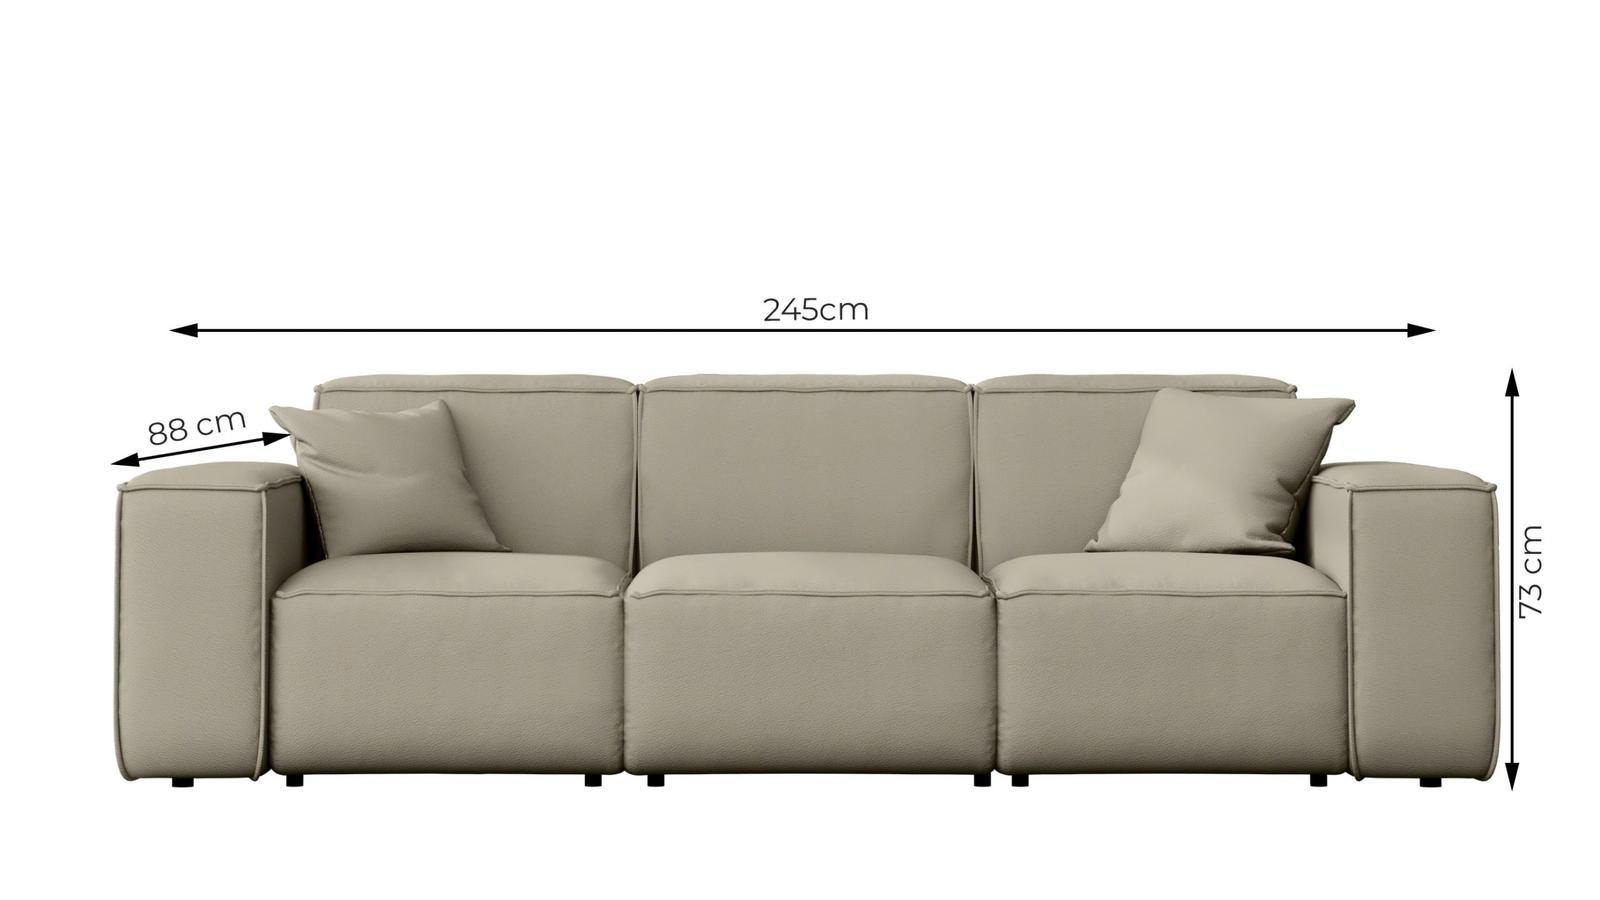 Sofa ogrodowa MALIBU 245x103x88 cm wodoodporna UV 3-os + 2 poduszki do ogrodu ciemnoniebieska nr. 3